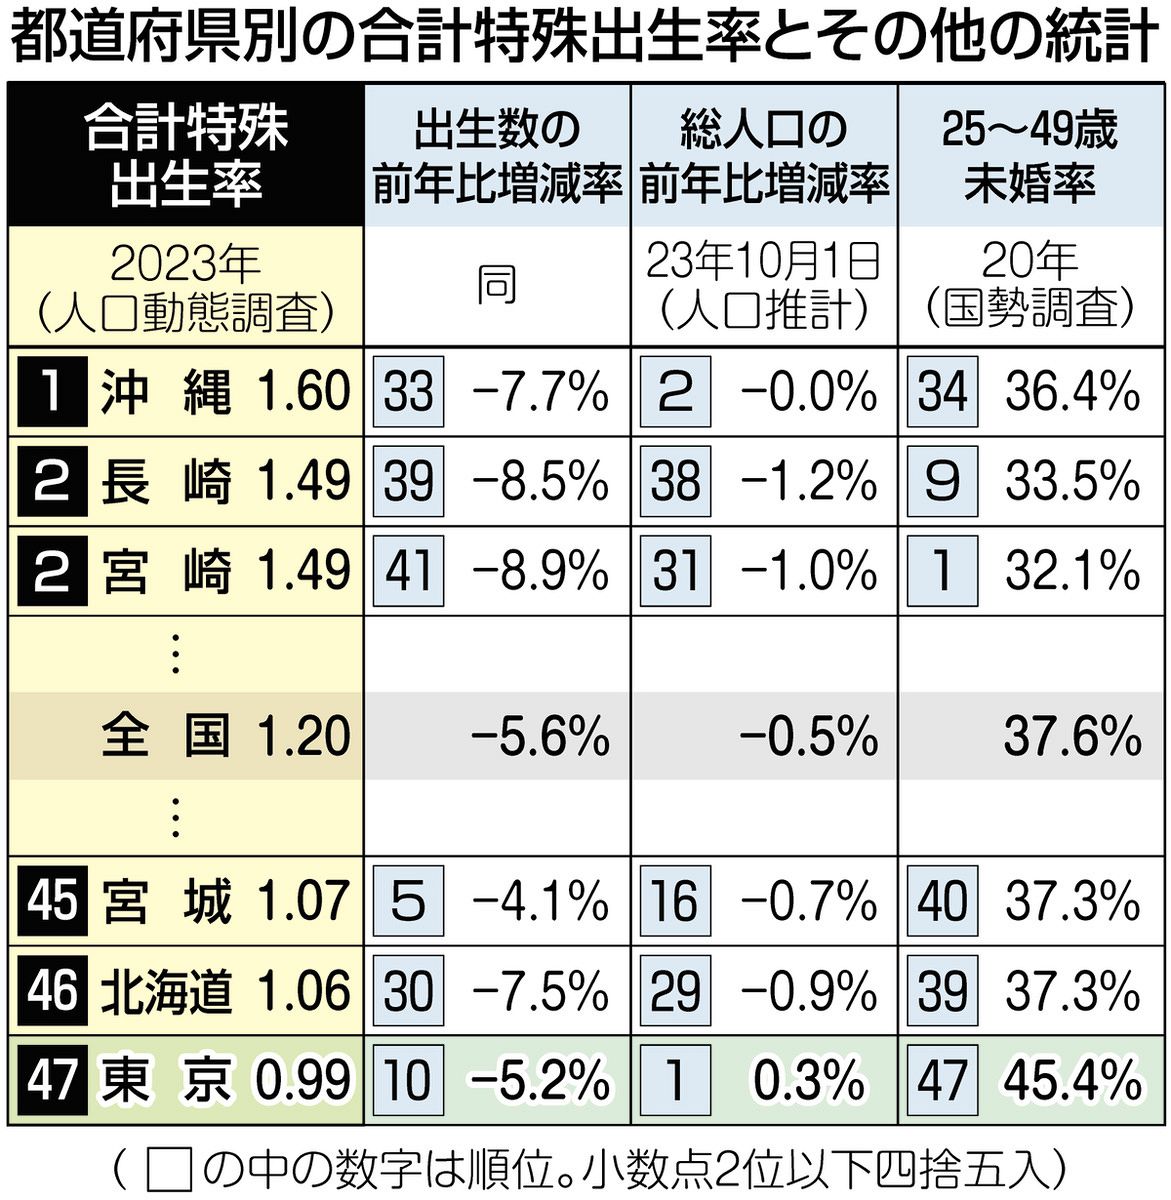 都道府県別の合計特殊出生率とその他の統計